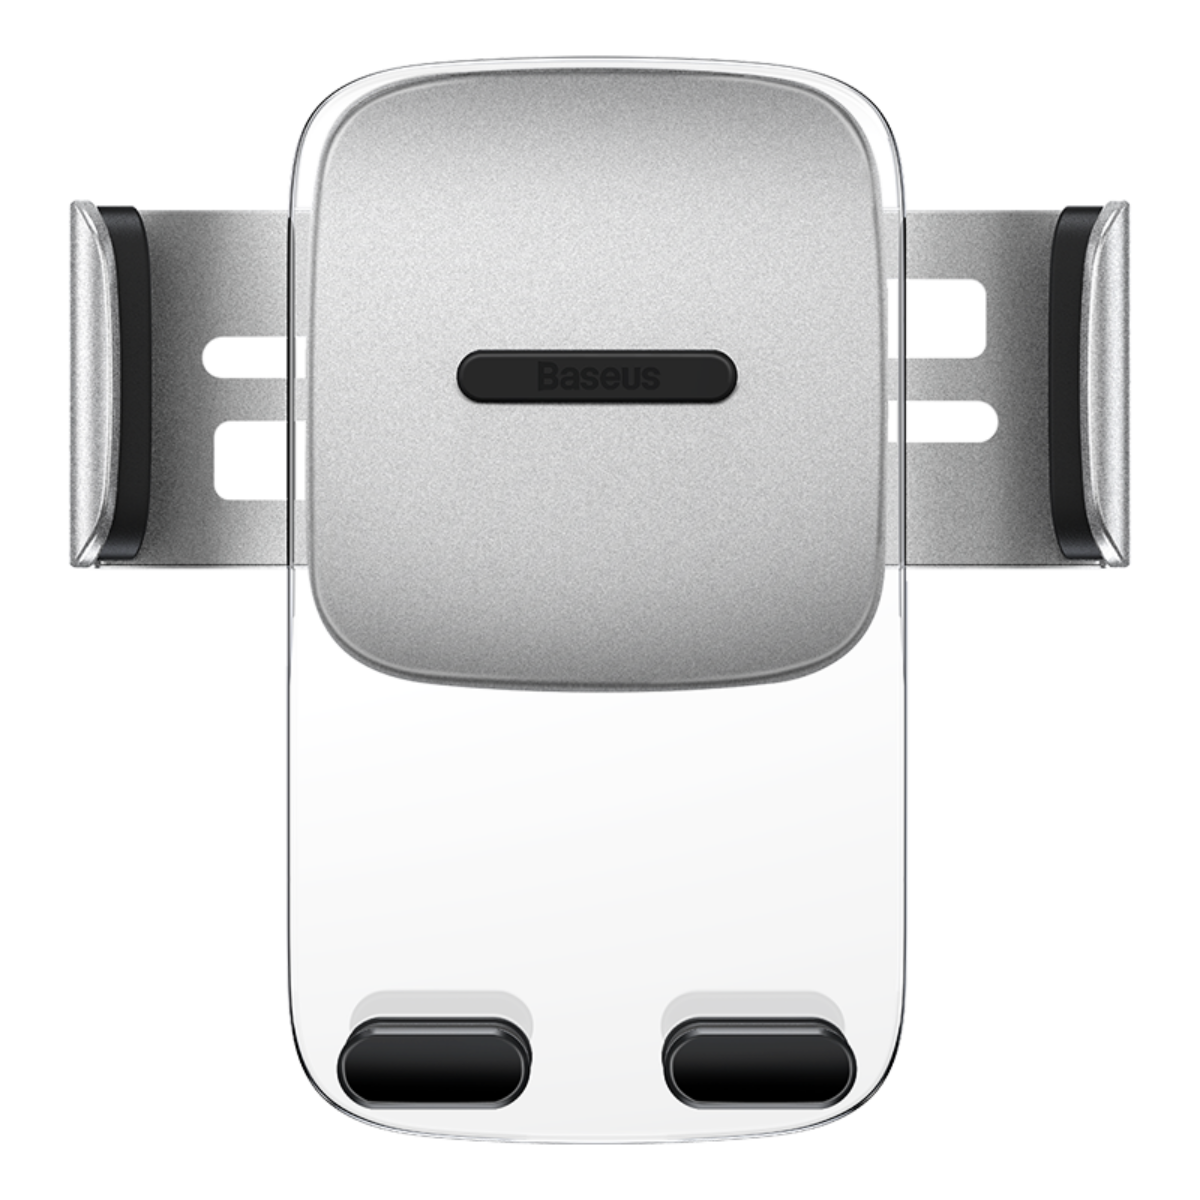 Kép 4/16 - Baseus autós telefon tartó, Easy Control Clamp Holder 2-in-1 gravitációs tartó (szellőzőrácsra és műszerfalra szerelhető), ezüst (SUYK000012)